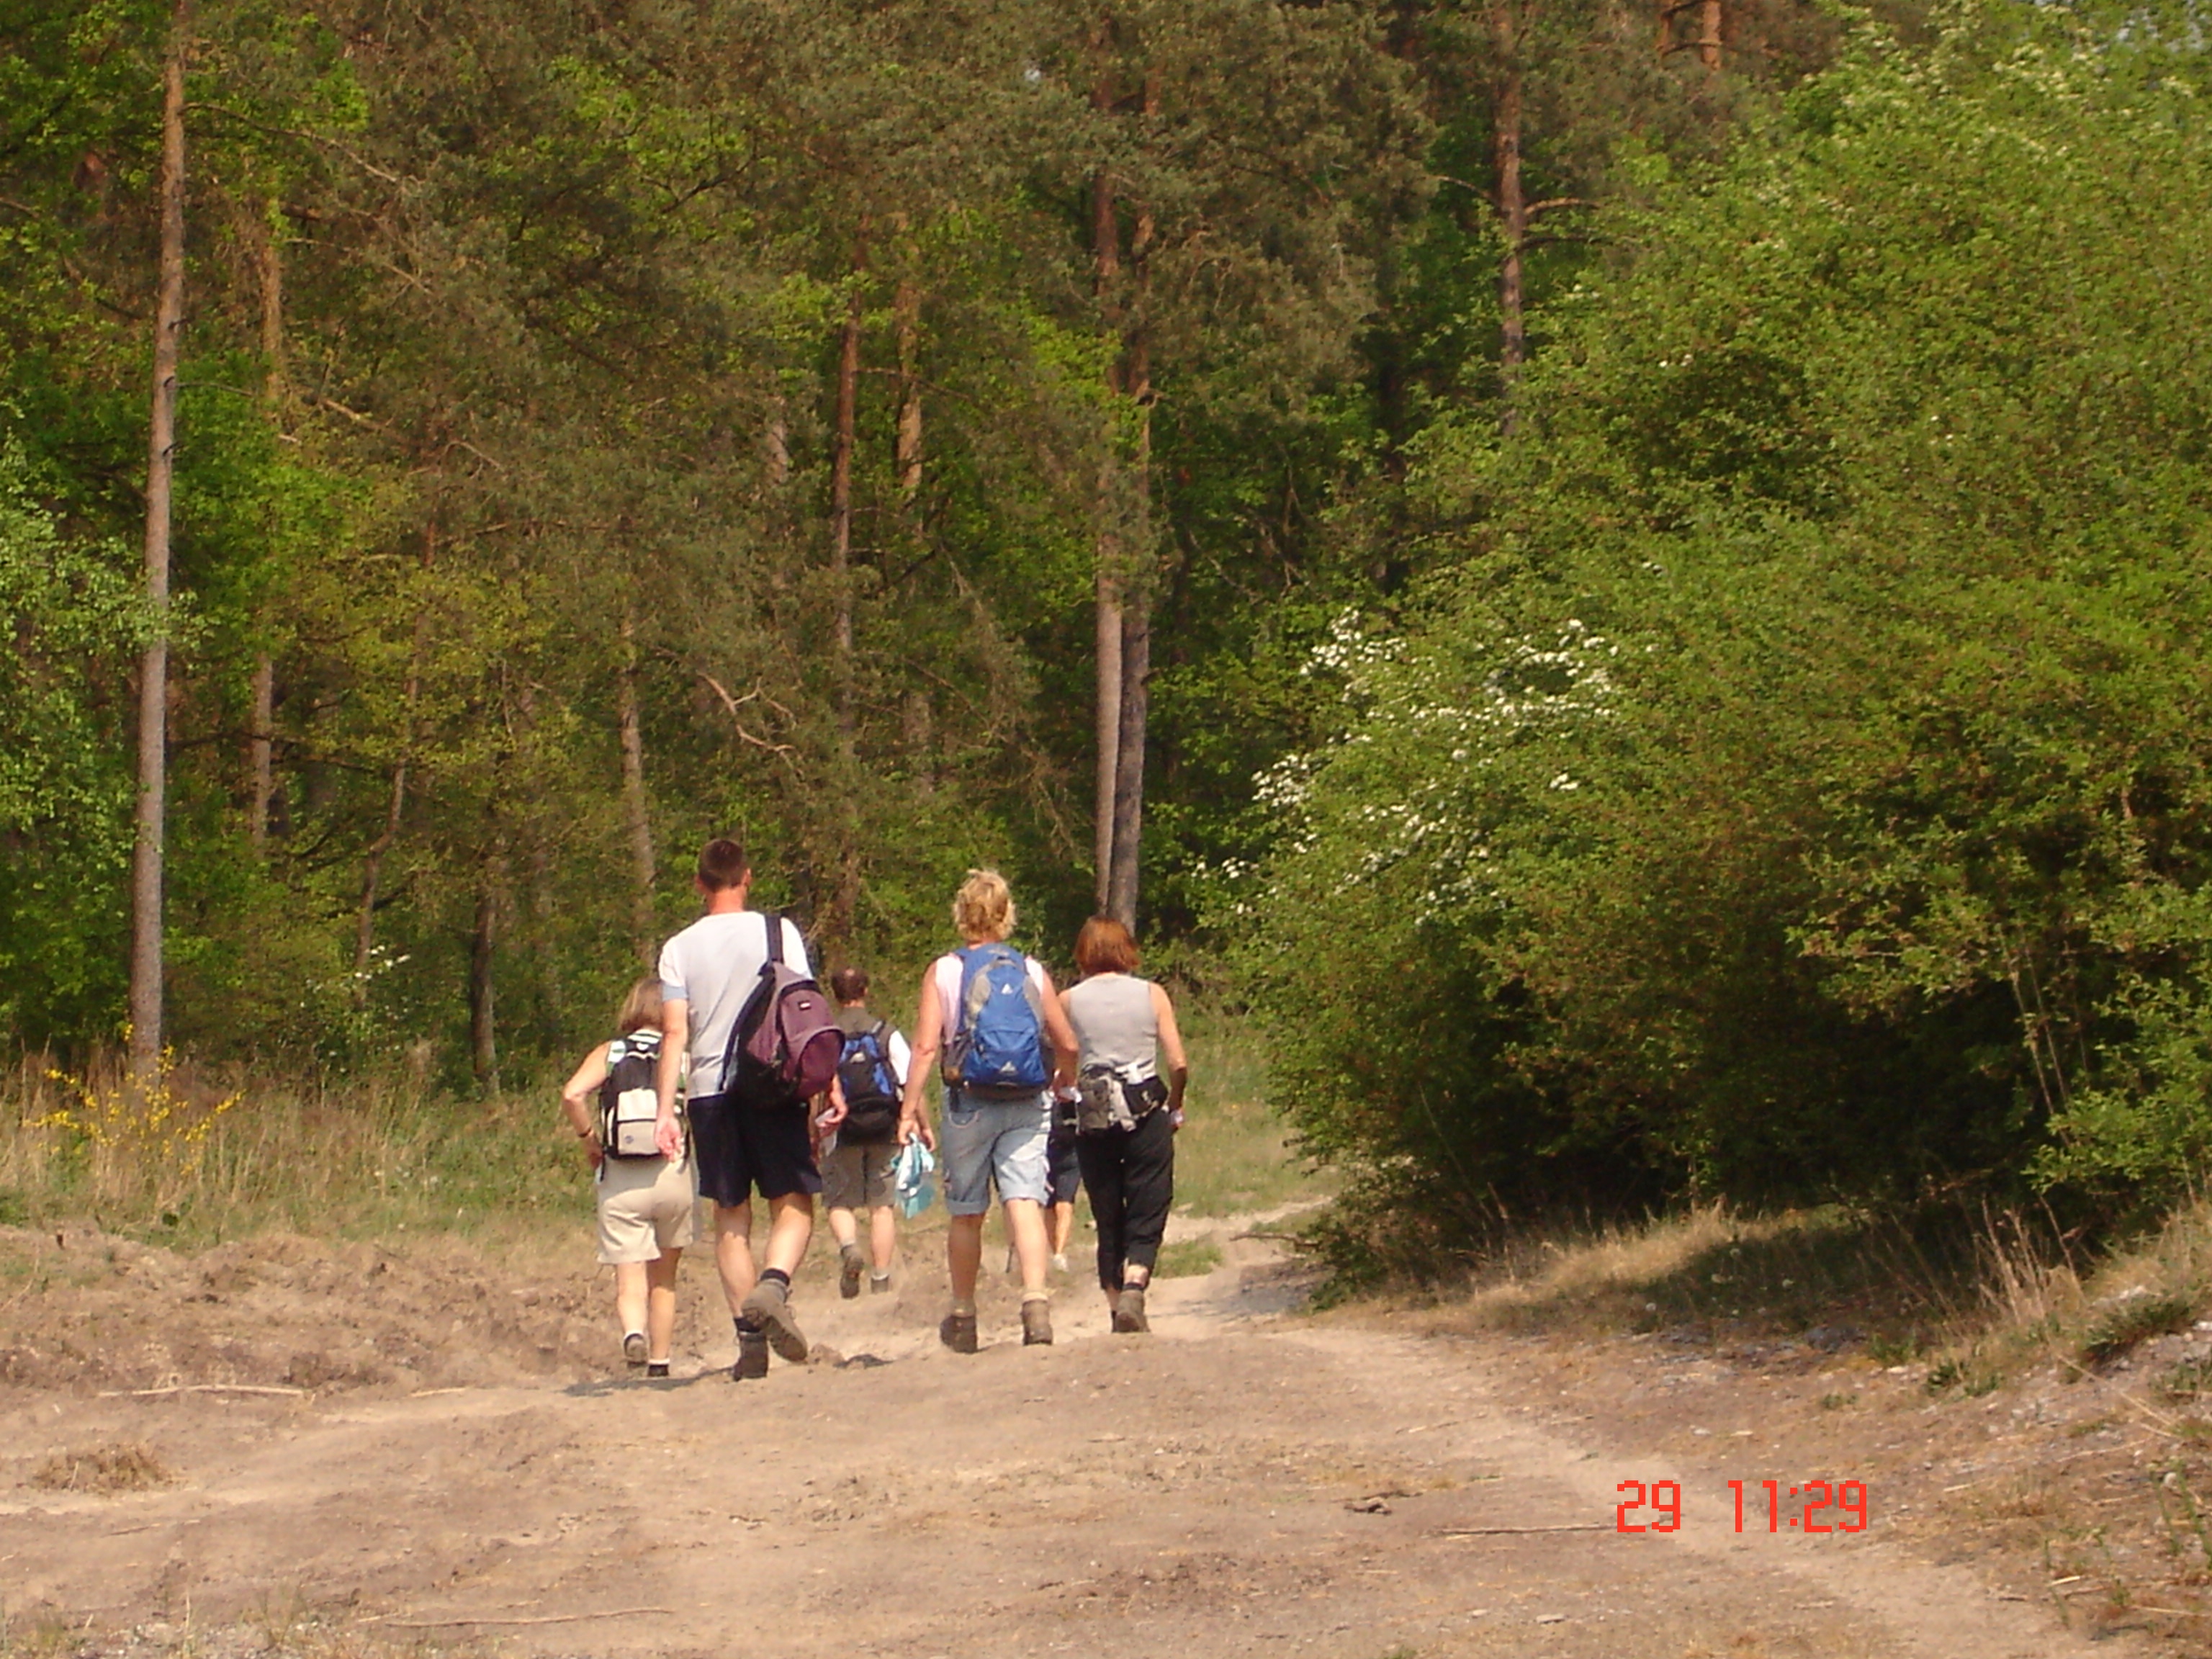 wandelen in de bosrijke omgeving van Clervaux